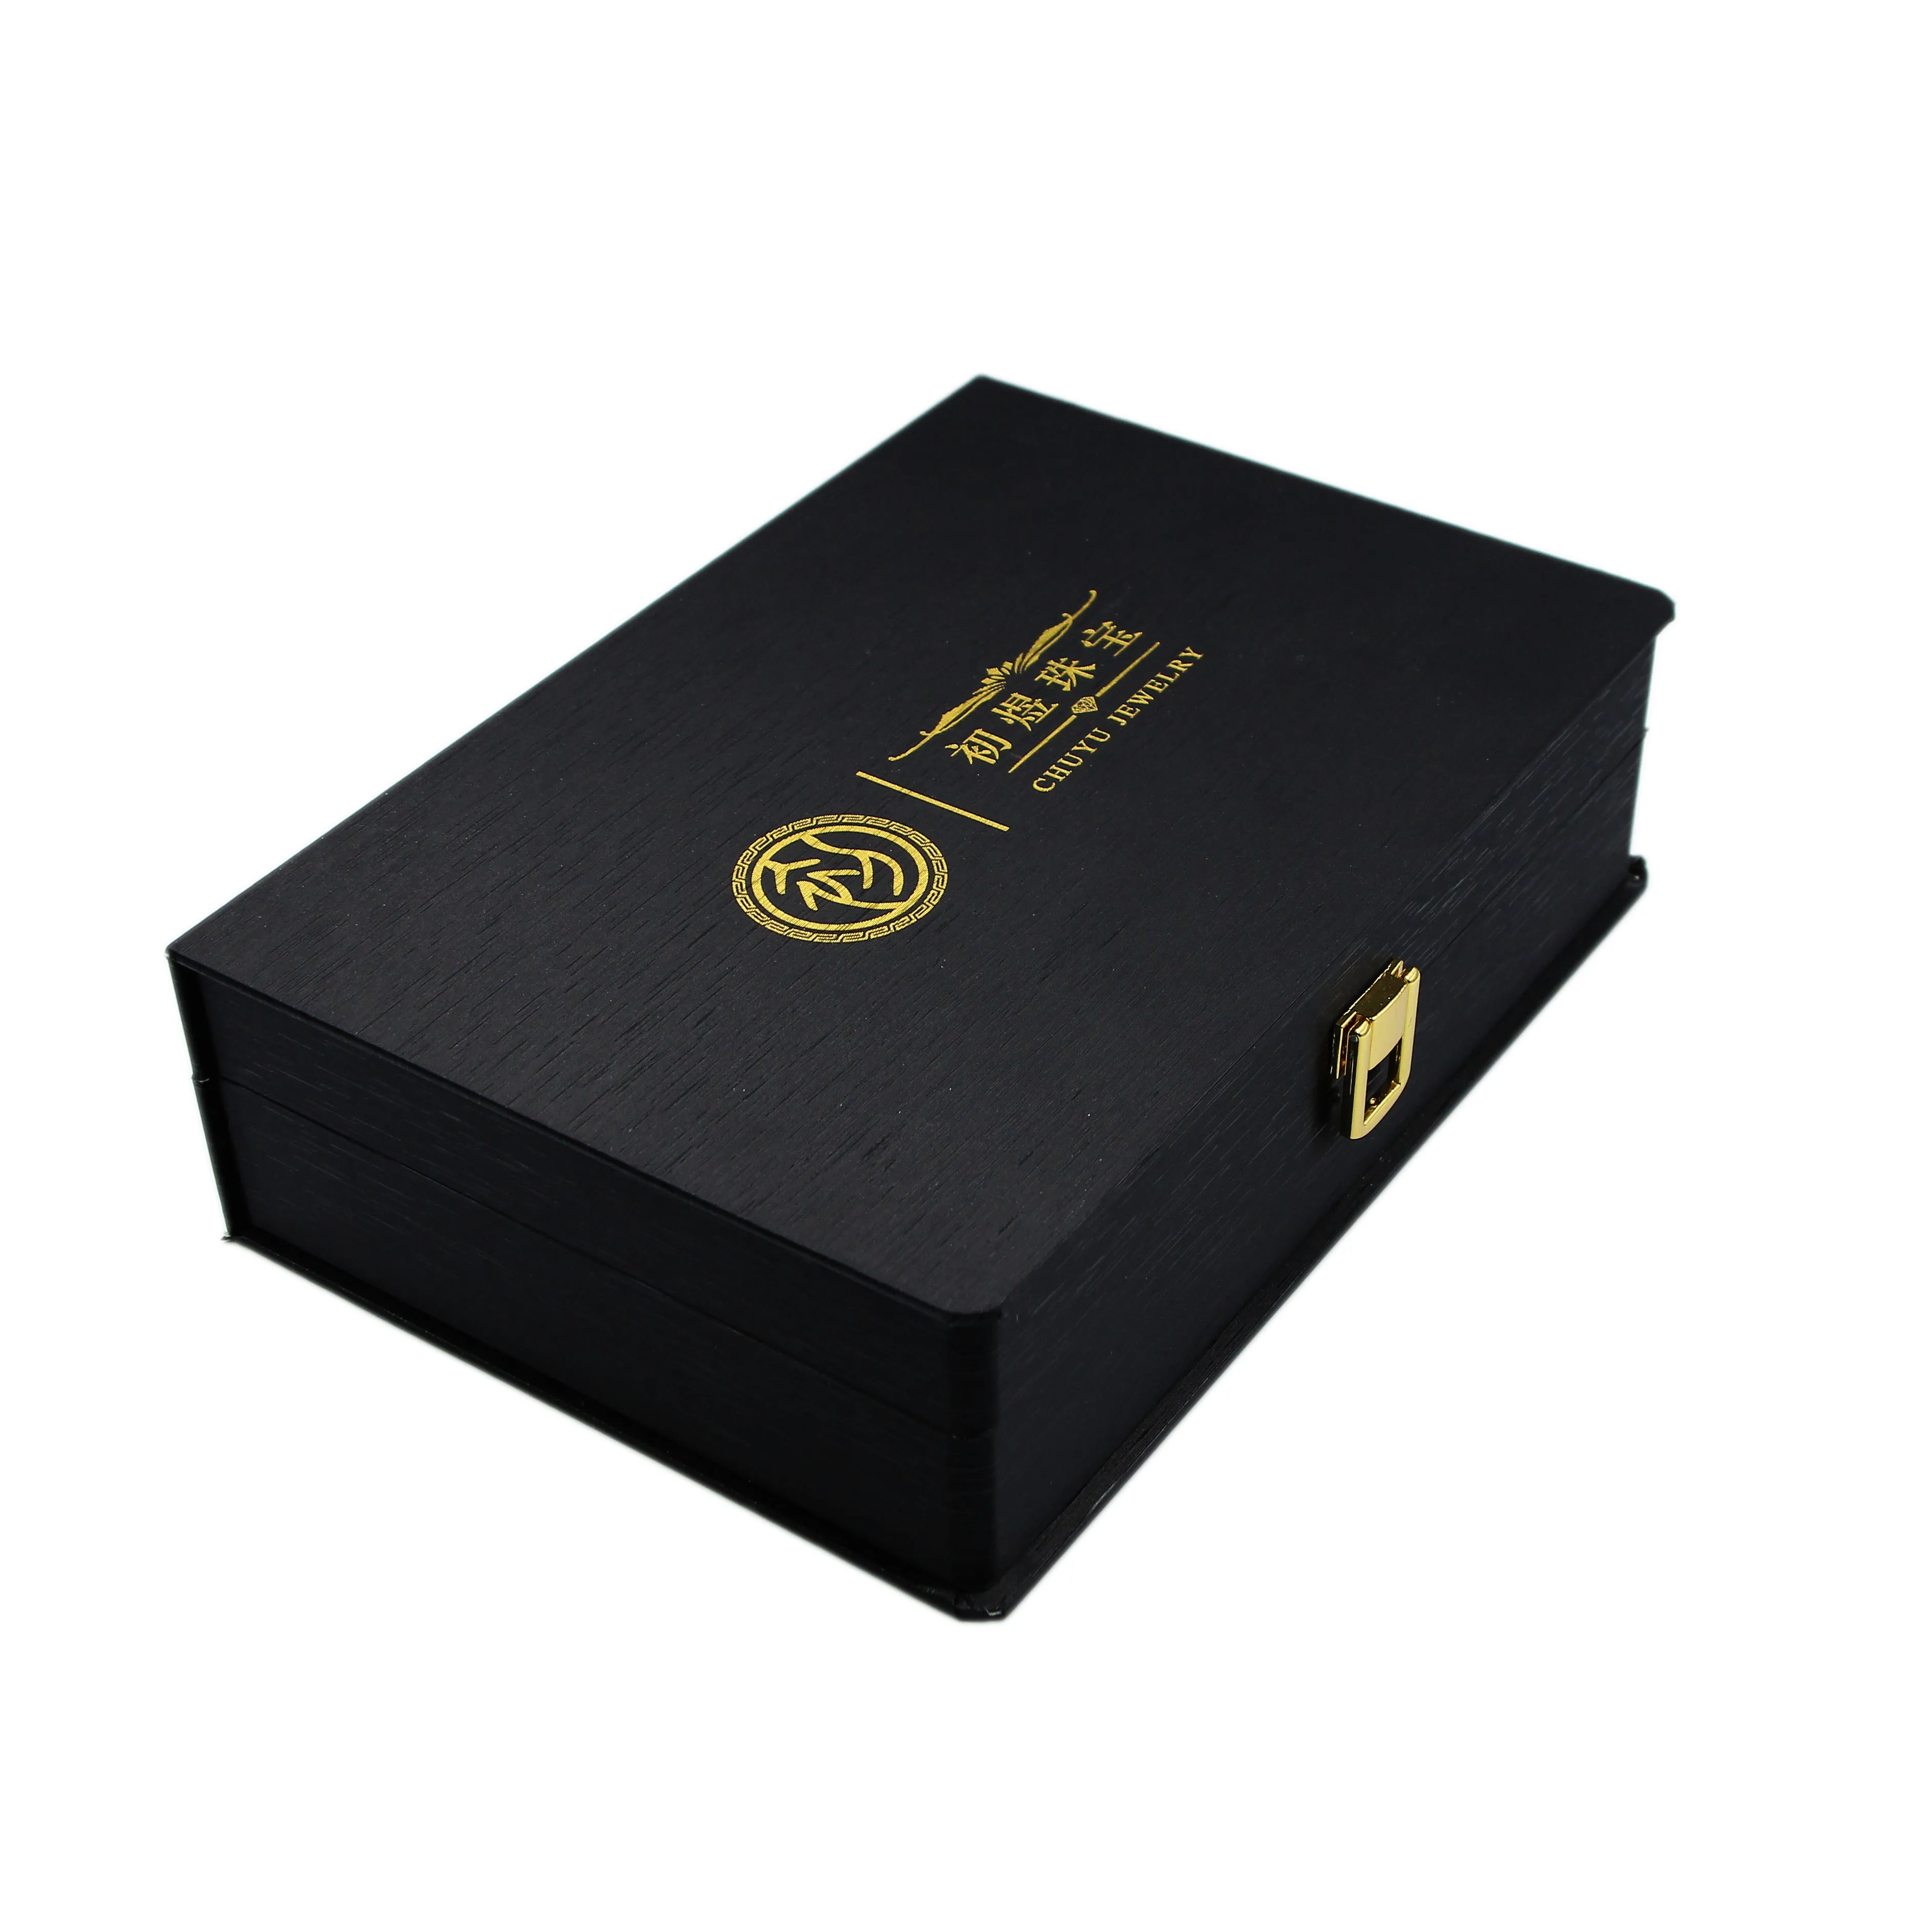 Black Luxury custom logo and size Paper Gift Box packaging with velvet insert